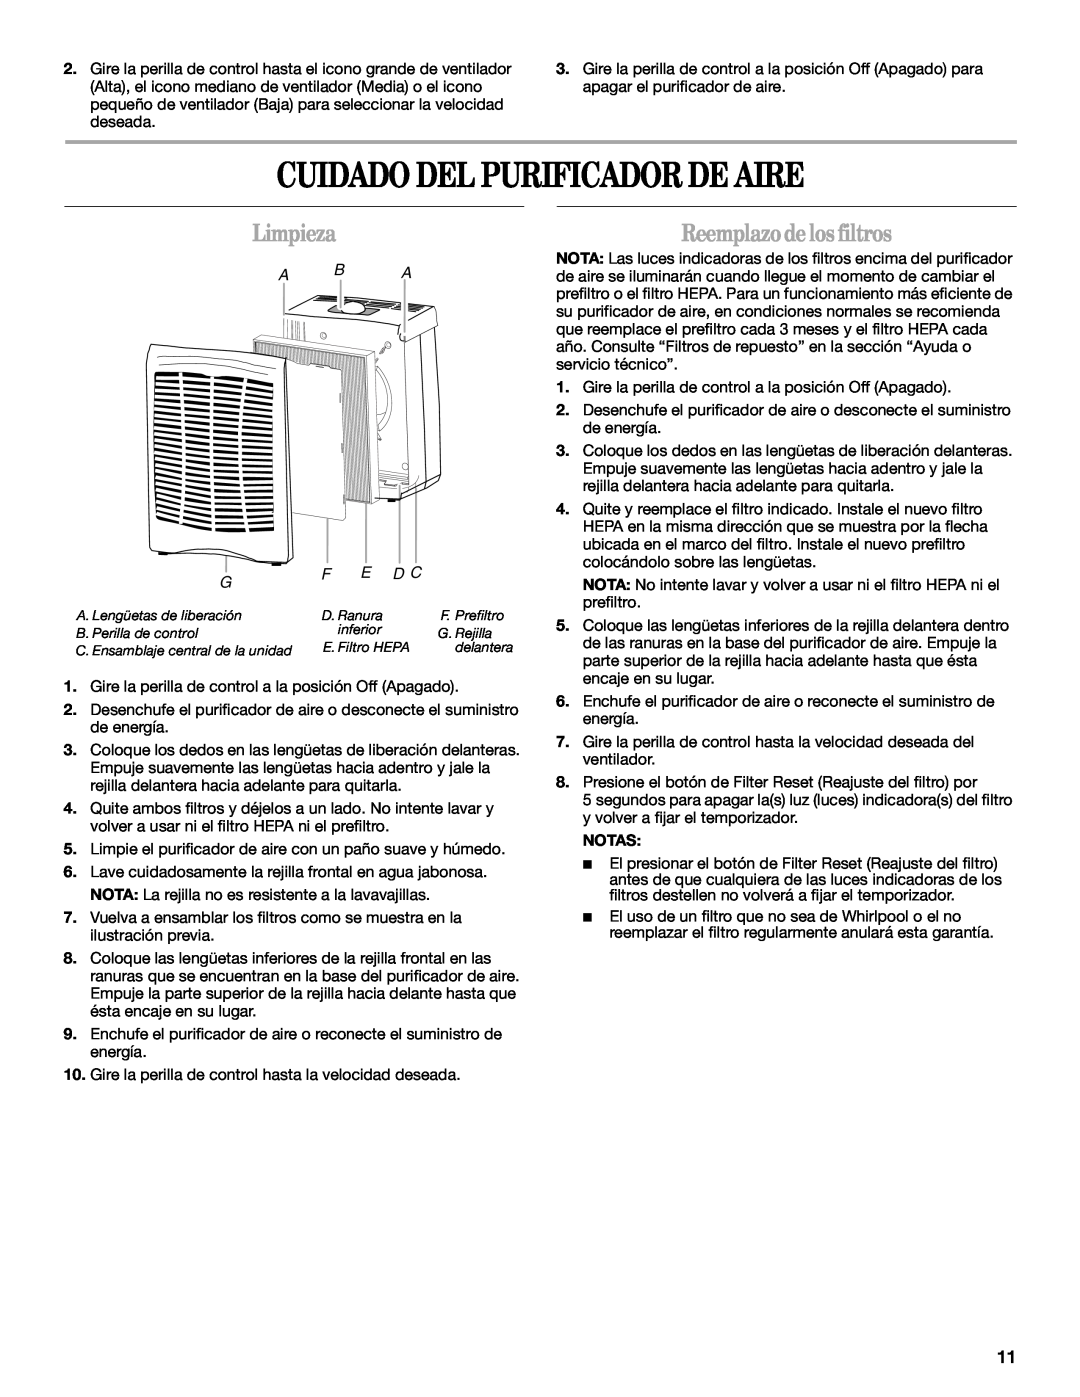 Whirlpool AP450, AP250 manual Cuidado Del Purificador De Aire, Limpieza, Reemplazo de los filtros, E D C, A B A 